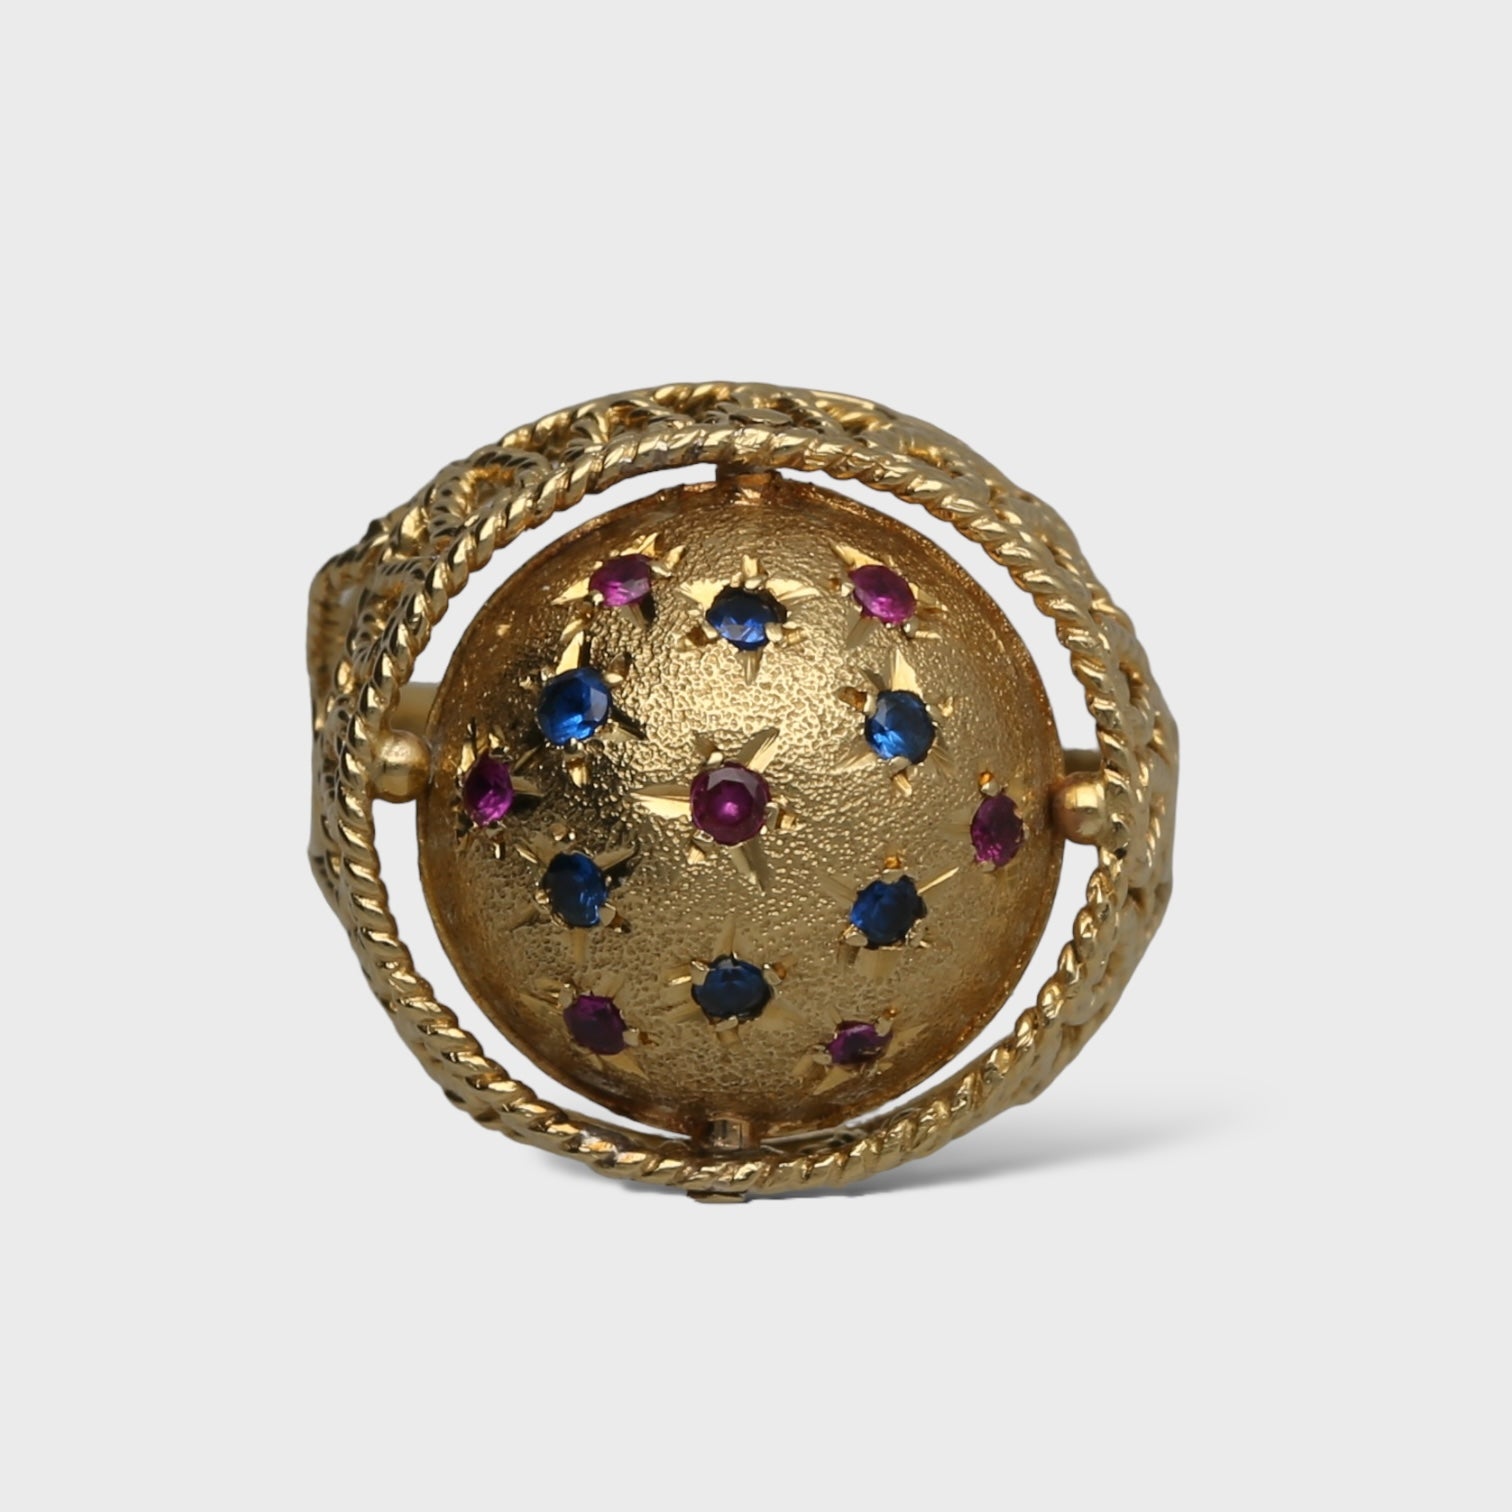 Second Hand Farbstein Ring online kaufen auf kaleaz.